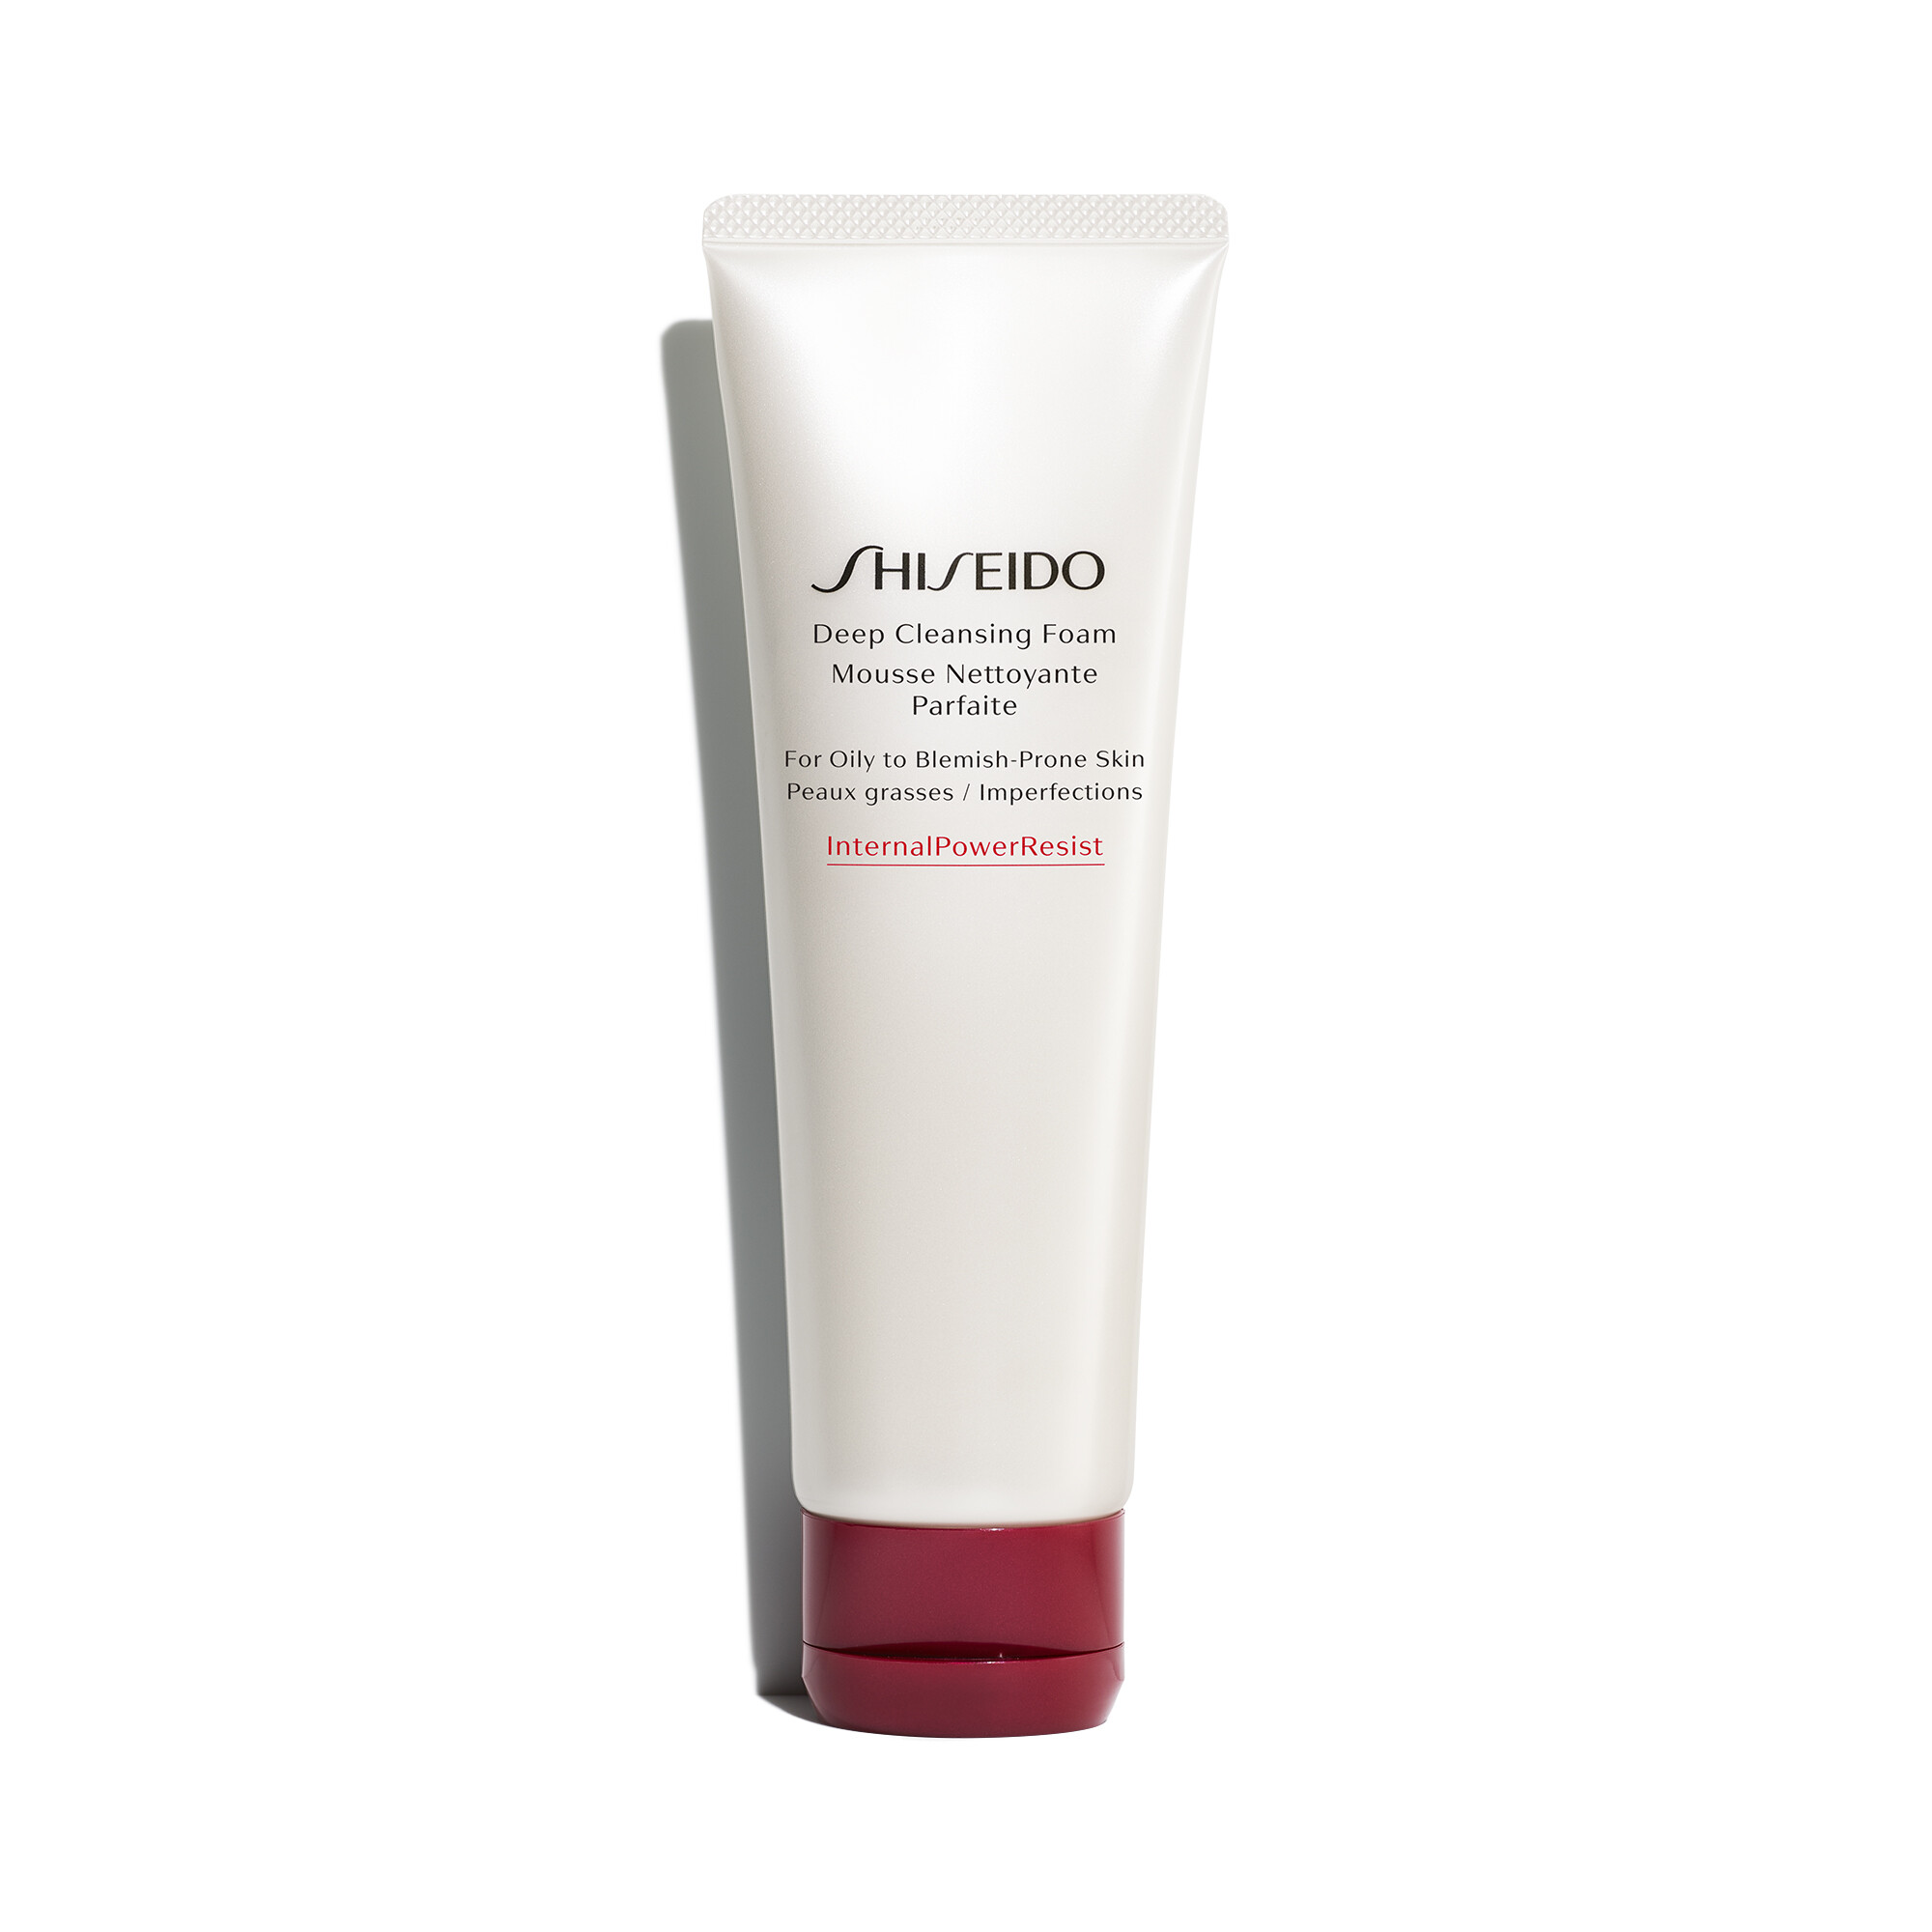 Pflege Shiseido Deep Cleansing Foam 125ml kaufen